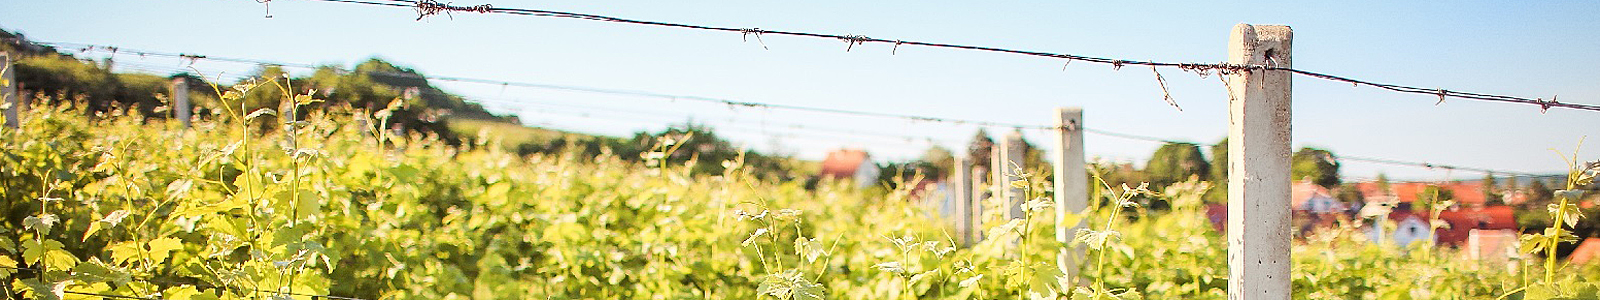 Blick in einen Weinberg ©DLR